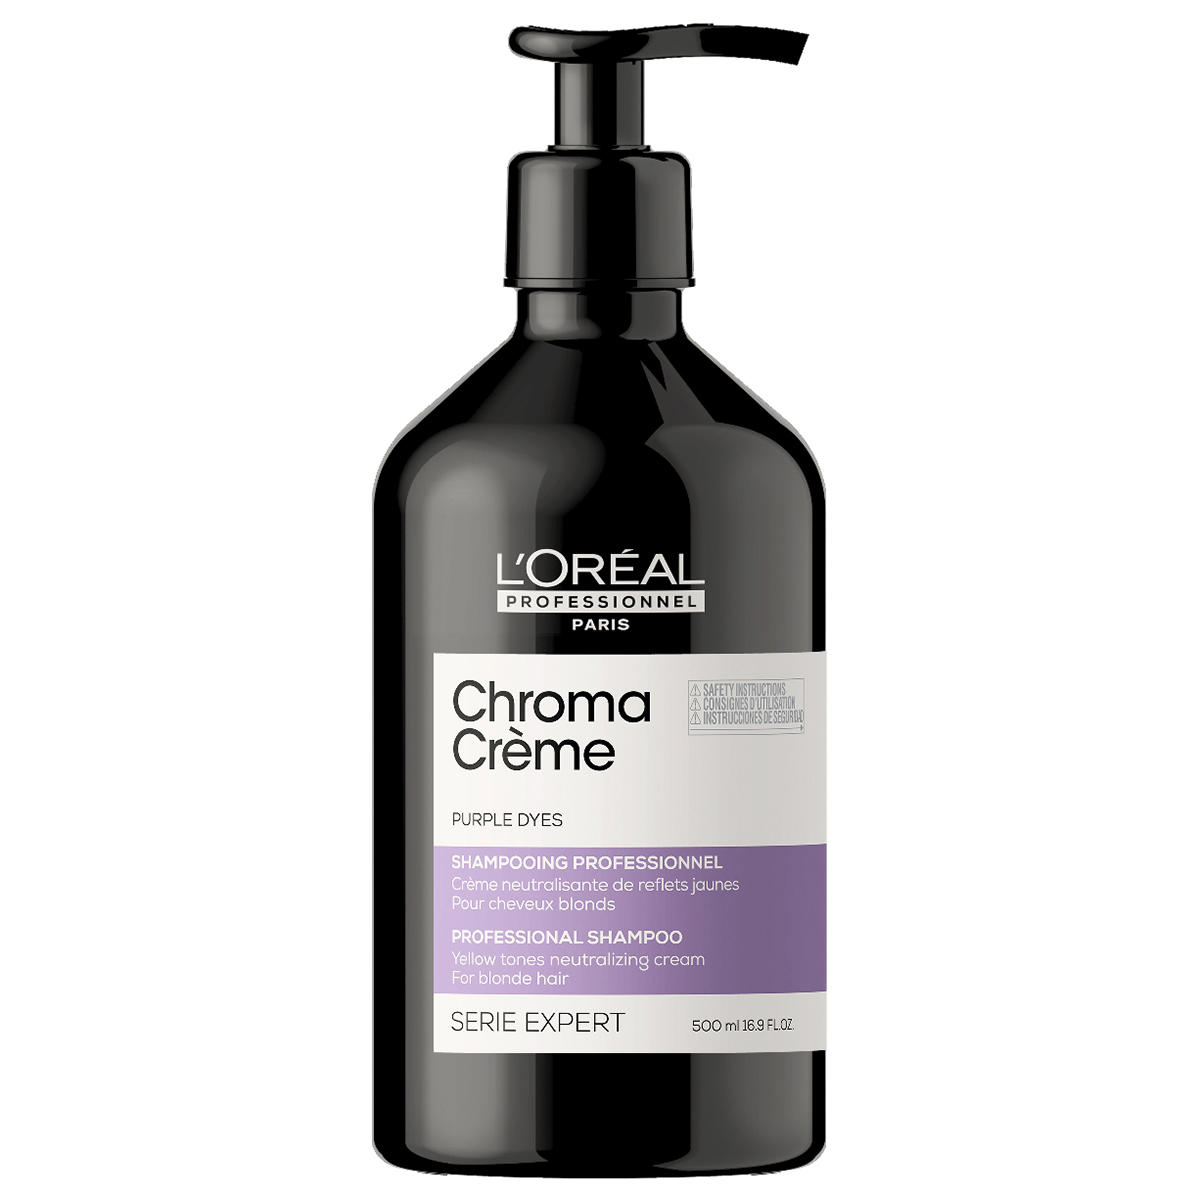 L'Oréal Professionnel Paris Serie Expert Chroma Crème Professional Shampoo Purple 500 ml - 1